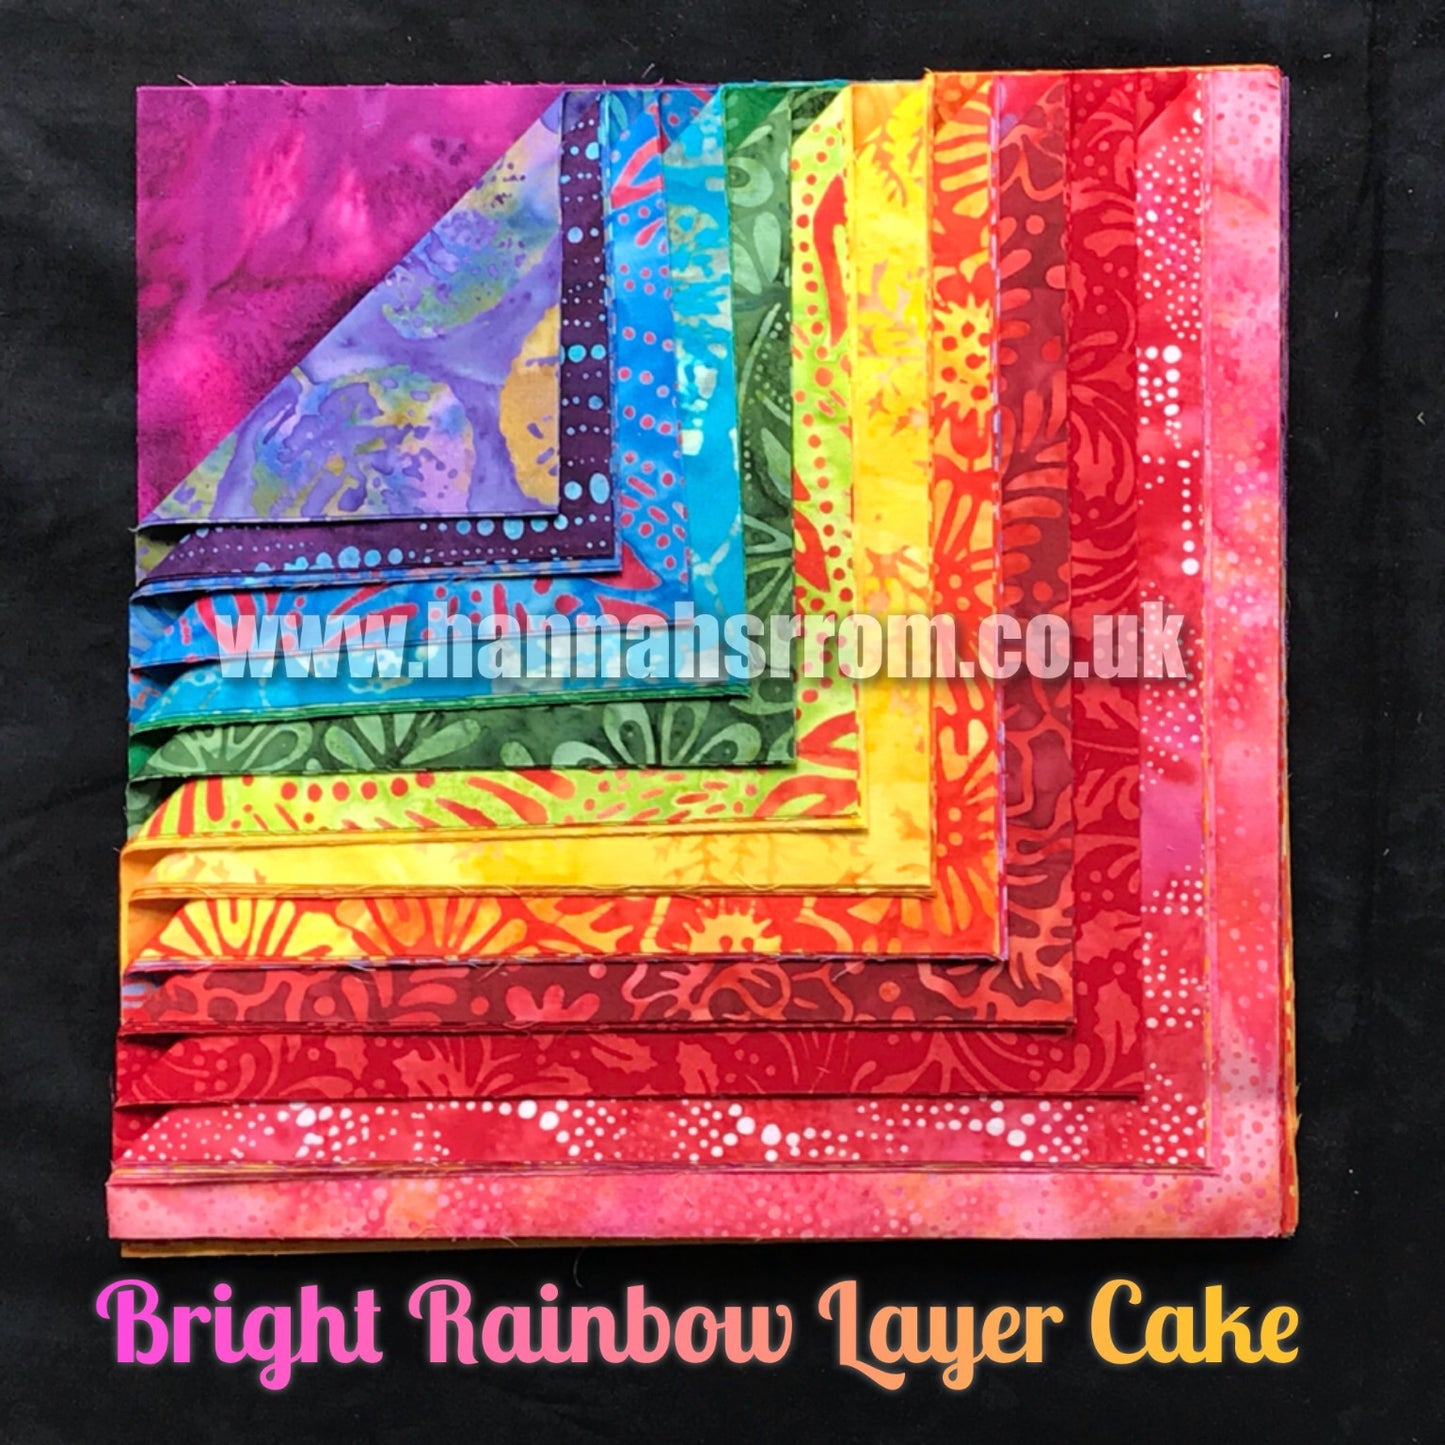 Bright Rainbow 10” Layer Cake